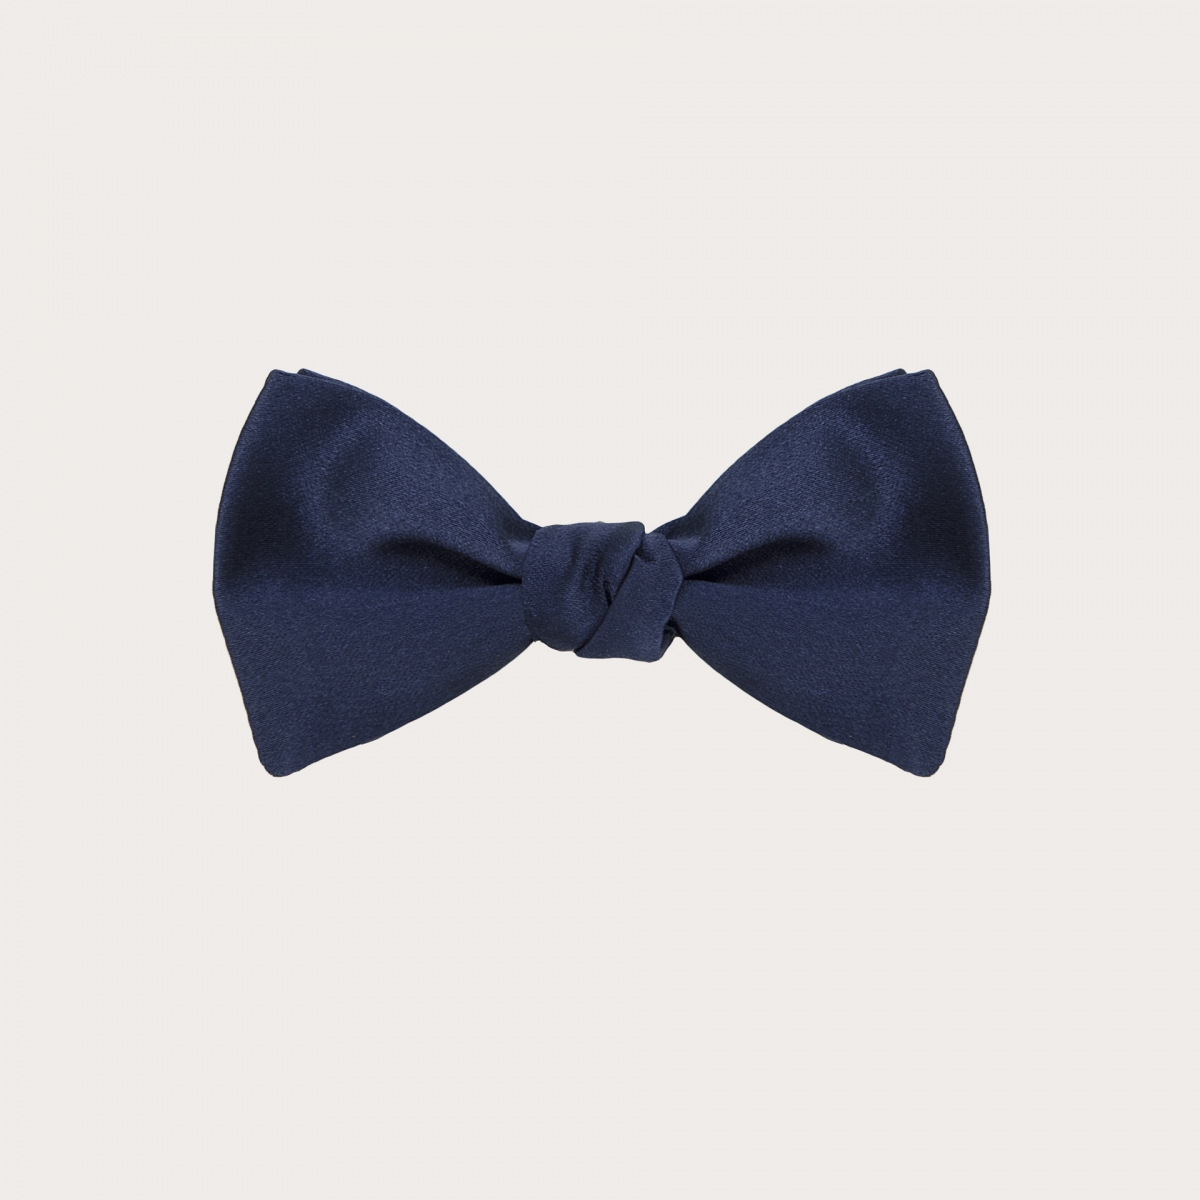 Children's blue bow tie